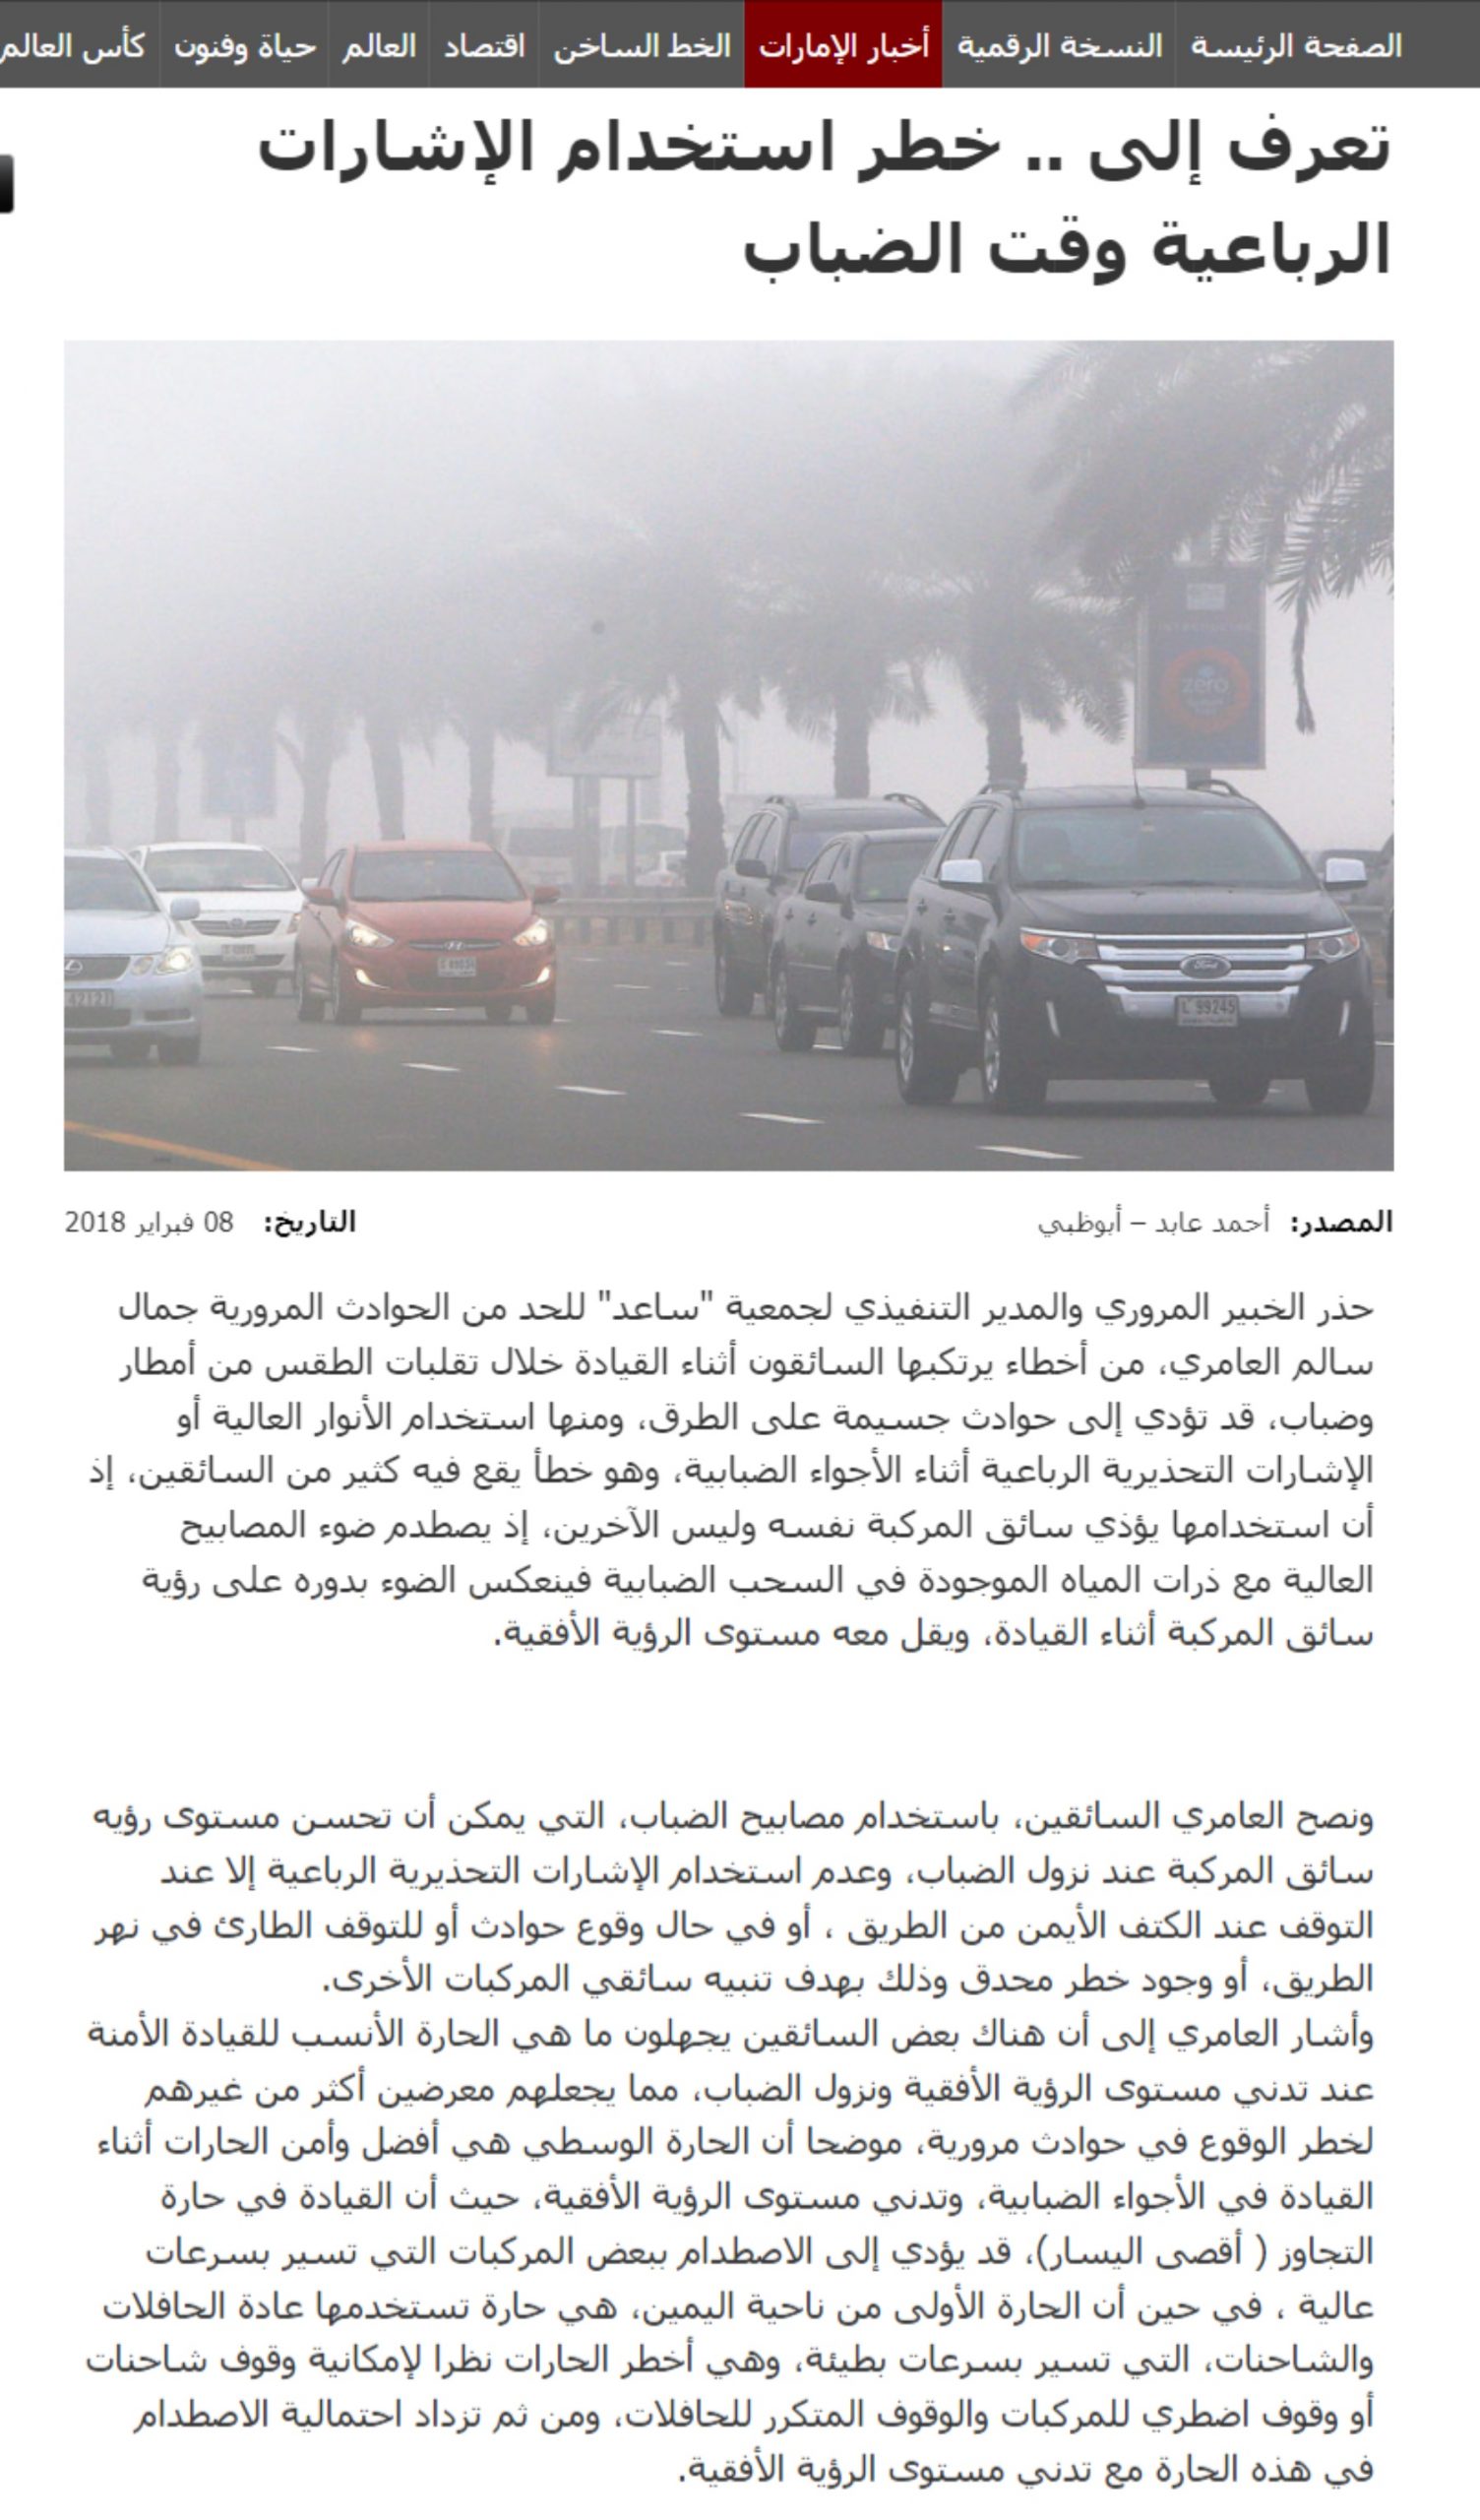 لماذا المرور السعودي يسمح باستخدام الأضواء التحذيرية “فلشر” بينما في بقية الدول العربية ودول العالم تعتبر مخالفة؟ 8